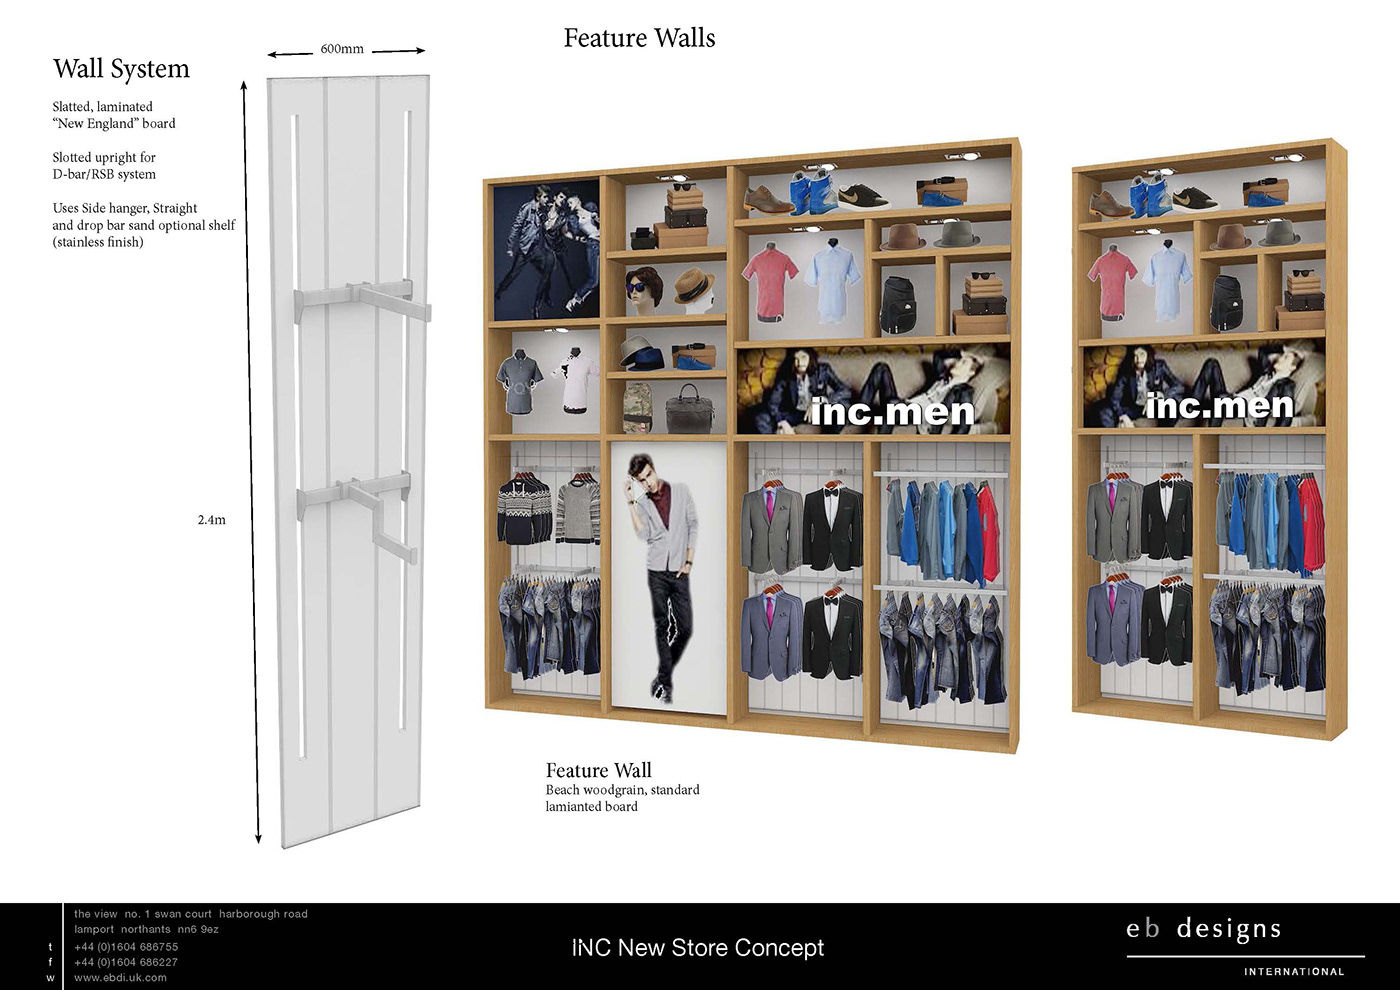 #Fashion #retail #Fashion Retail #STORE DESIGN #Fixture Design #interior design #prototypes #finishes